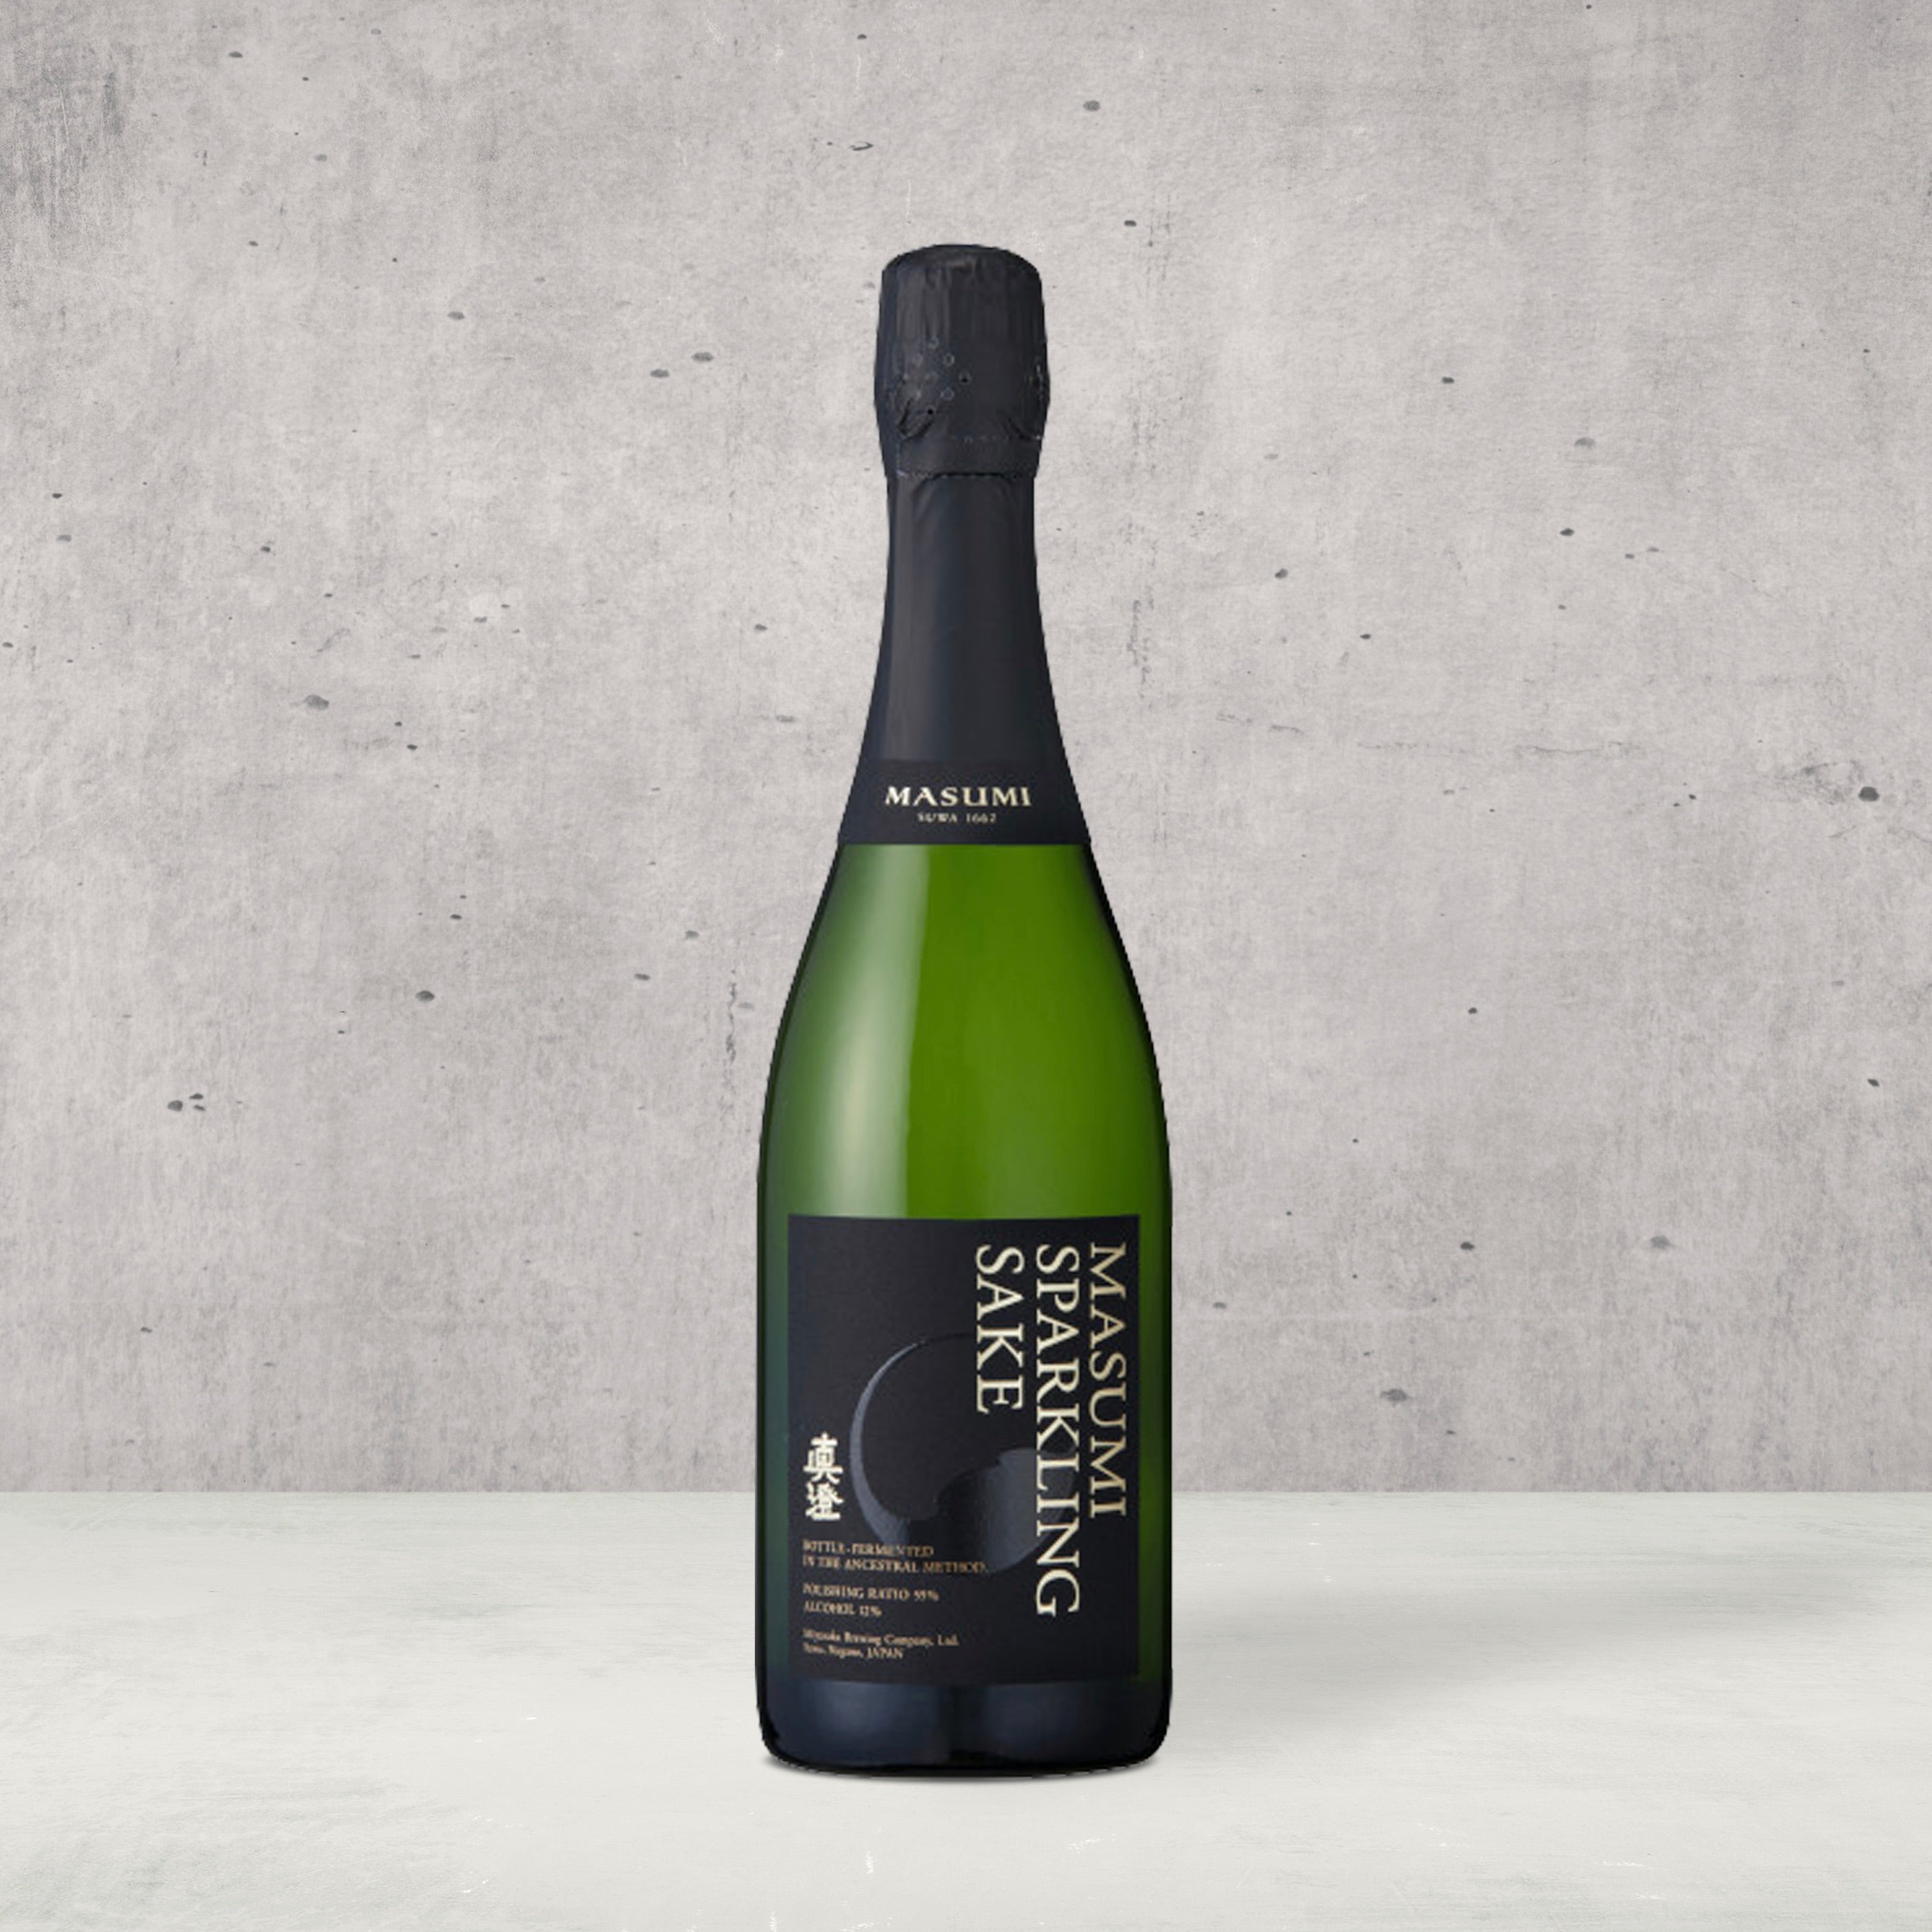 Masumi Sparkling Sake. New Label. Stunning Sake